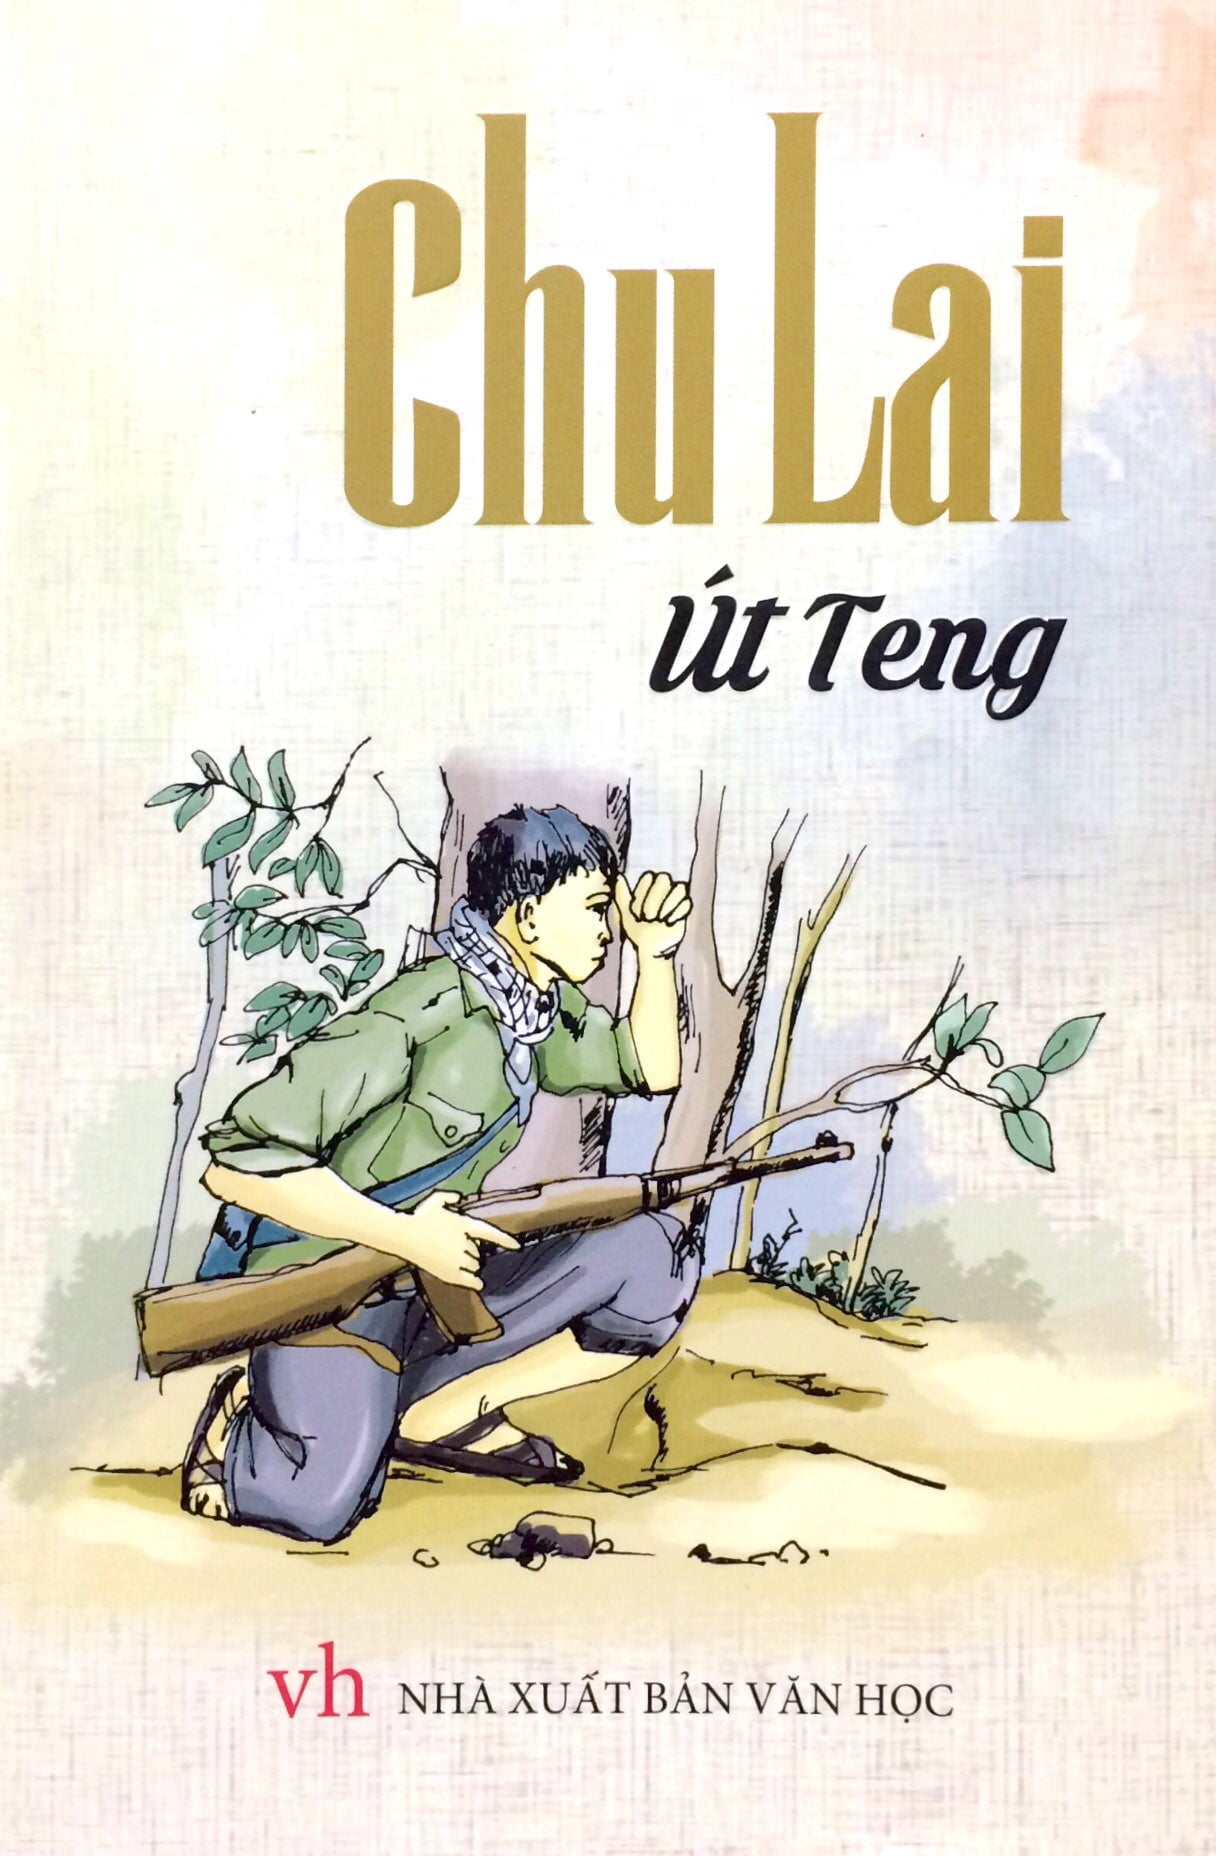 Chu Lai - Út Teng PDF